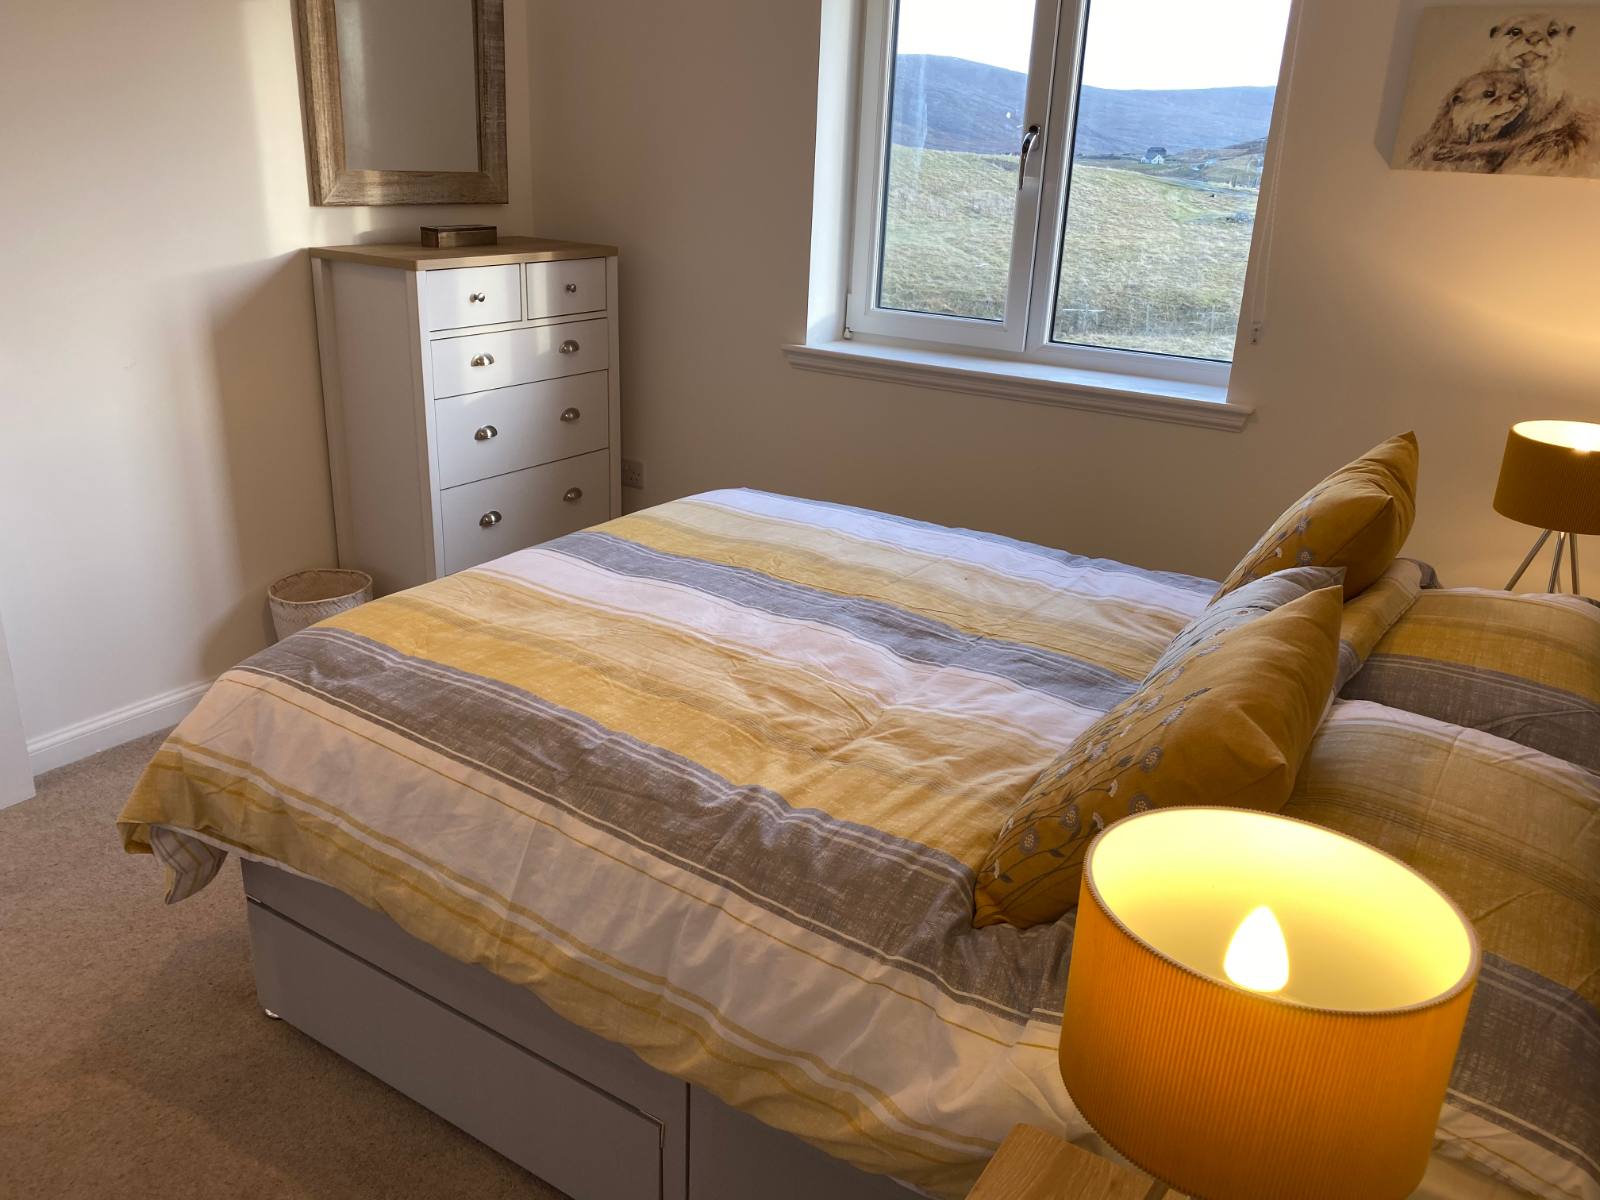 Bedroom 4 – standard double bed